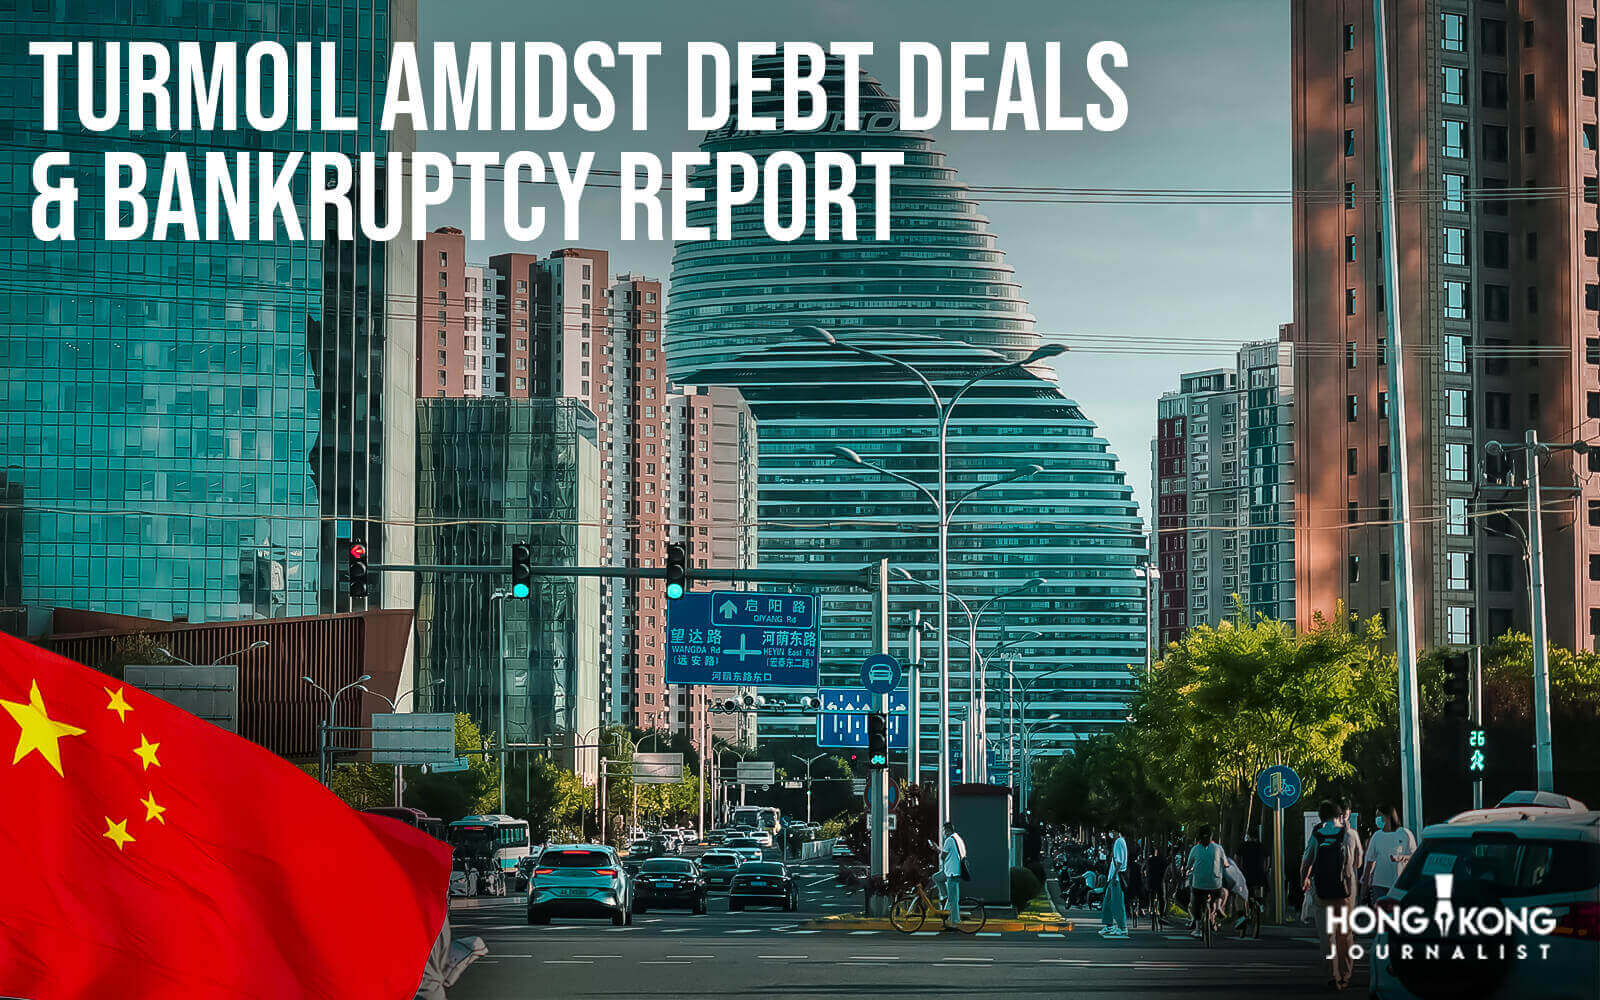 China Property Turmoil Amidst Debt Deals & Bankruptcy Report